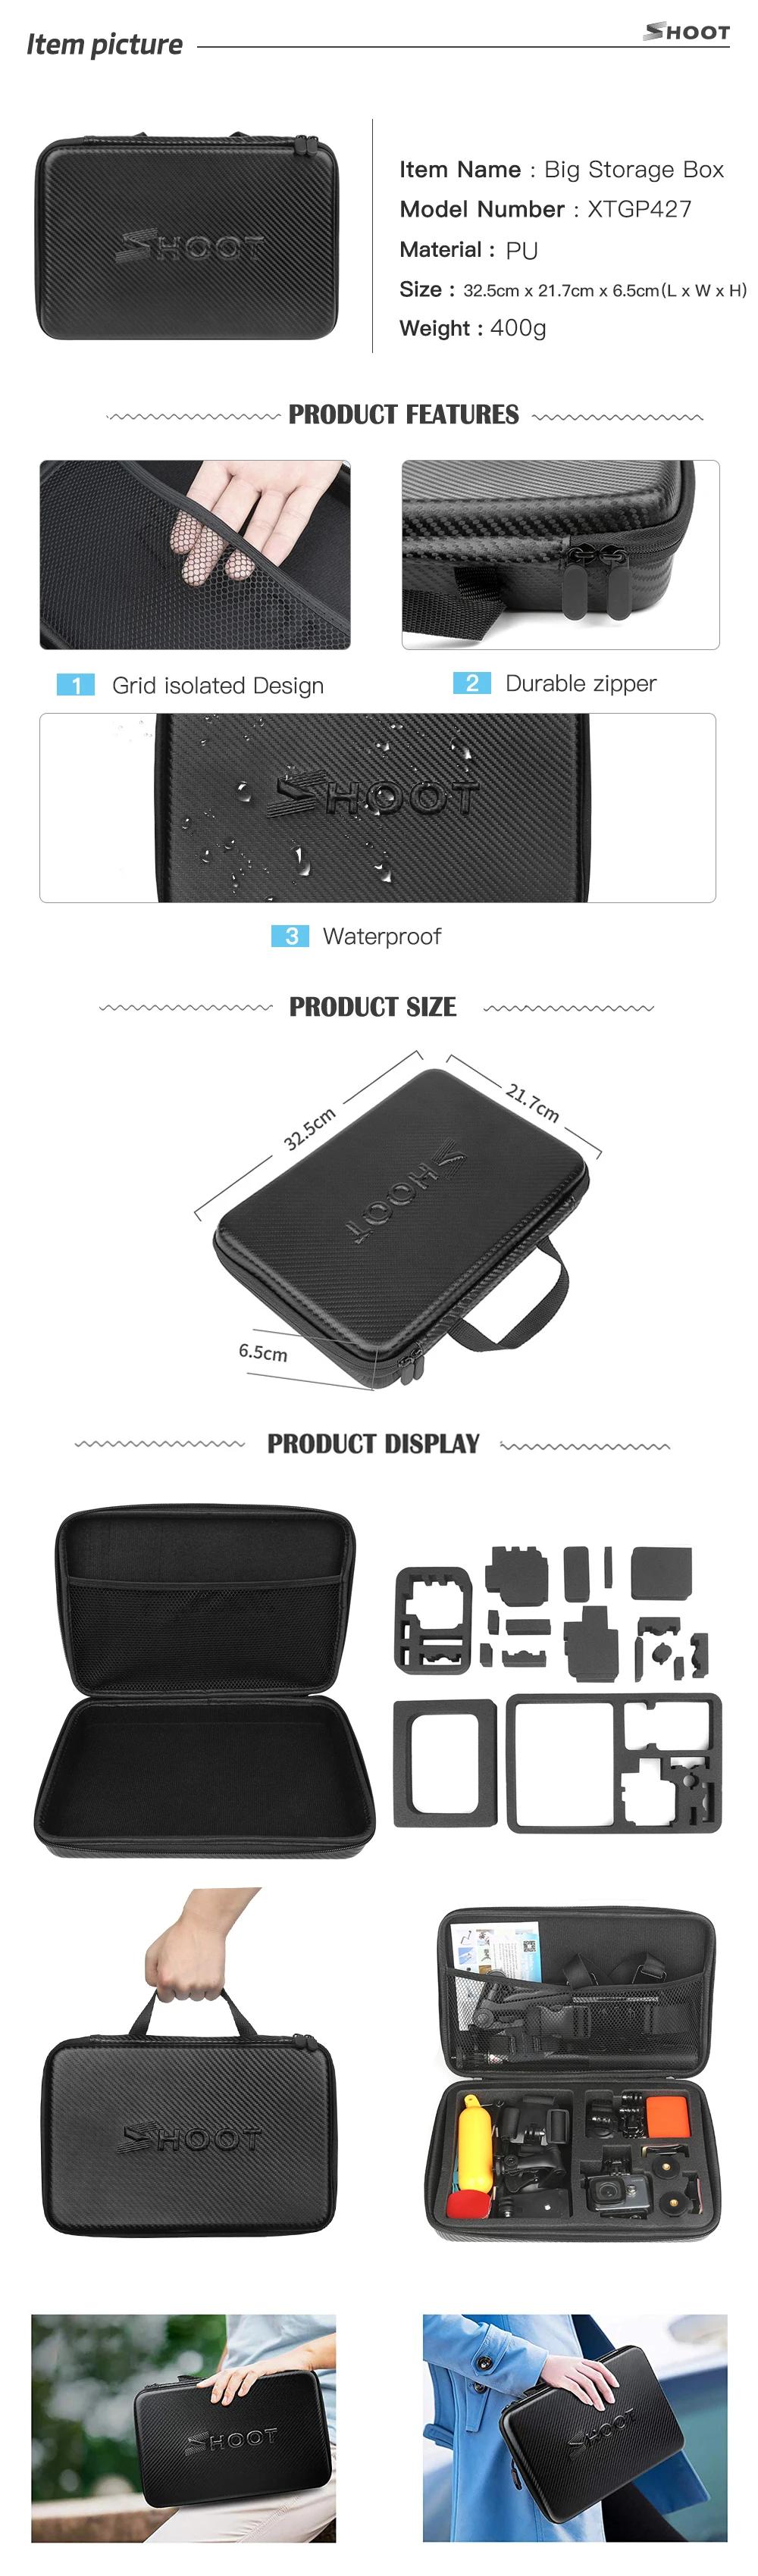 Стрелять Действие Камера аксессуаров для GoPro Hero 7 6 5 4 черный Xiaomi Yi 4 K Lite 2 SJCAM SJ7 Экен H9 Go Pro крепление для Sony Nikon комплект